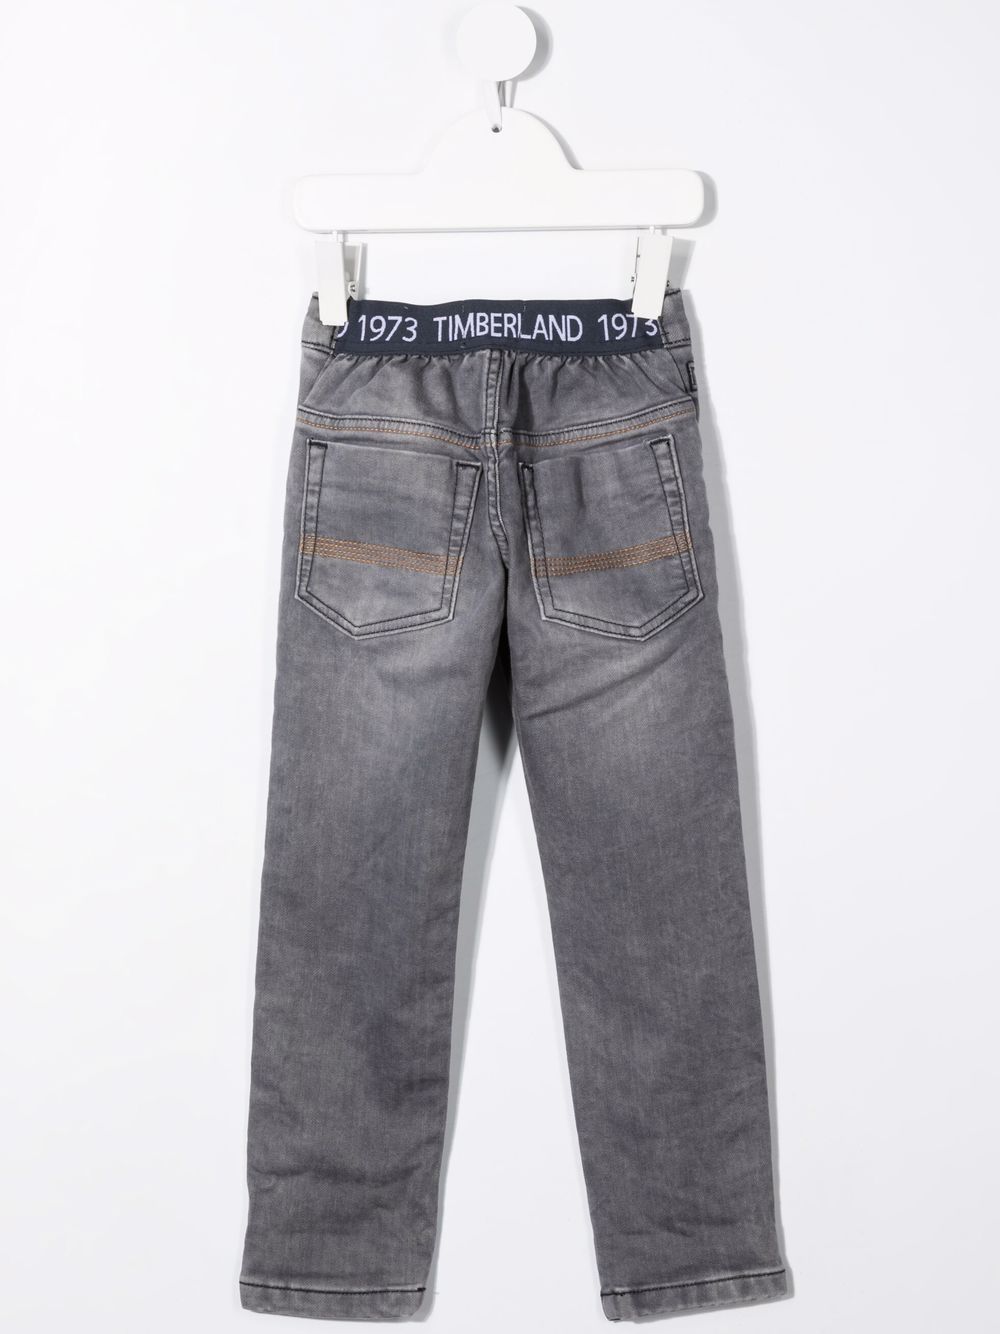 фото Timberland kids джинсы с кулиской и логотипом